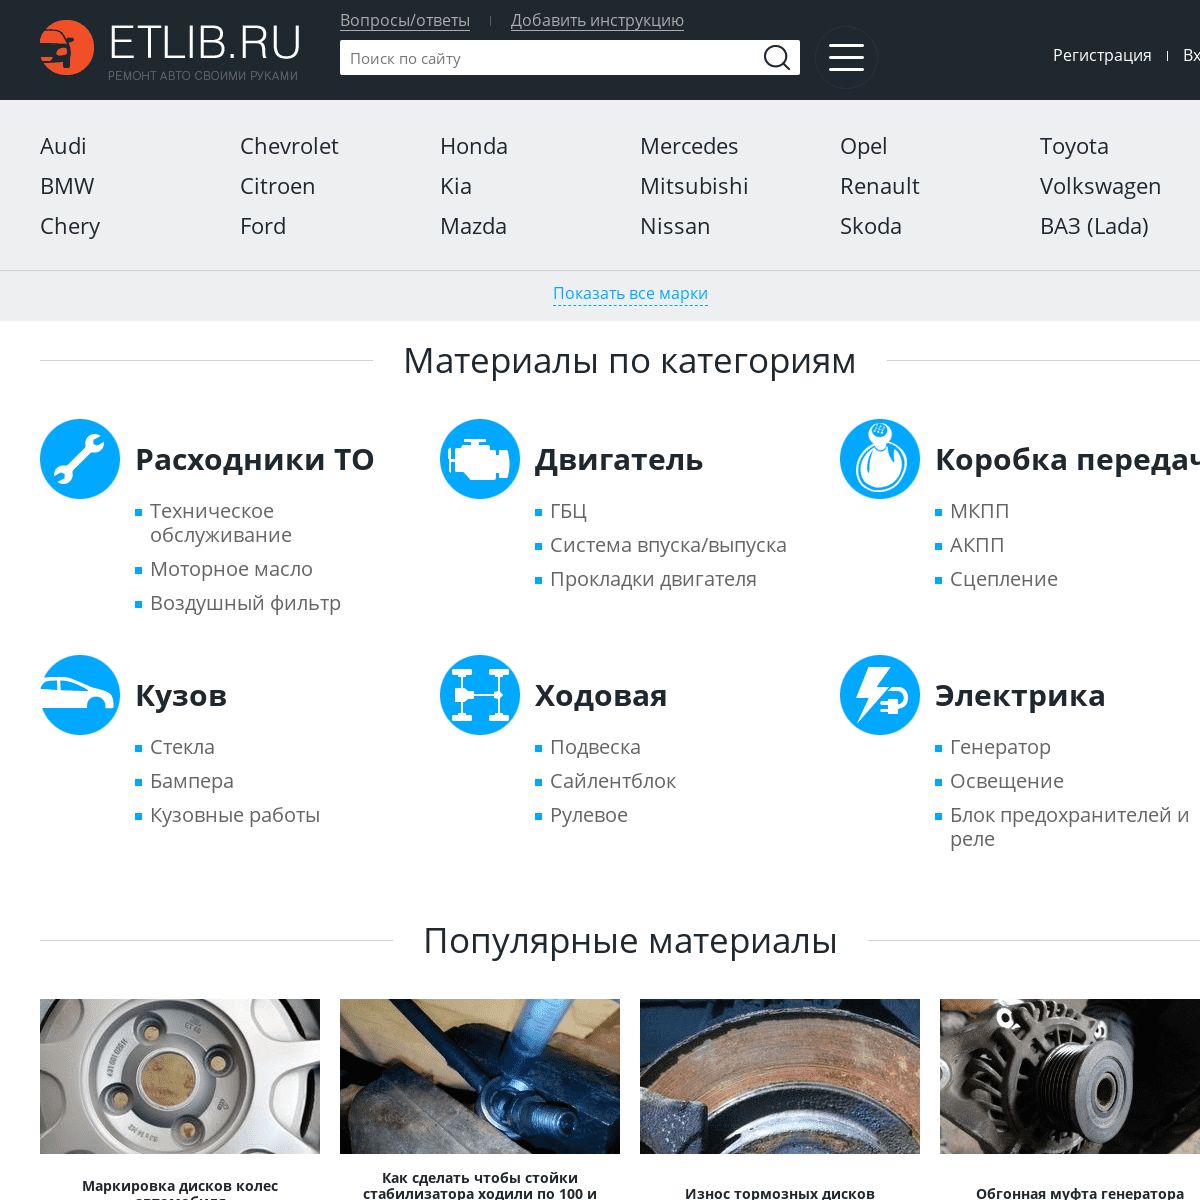 A complete backup of etlib.ru